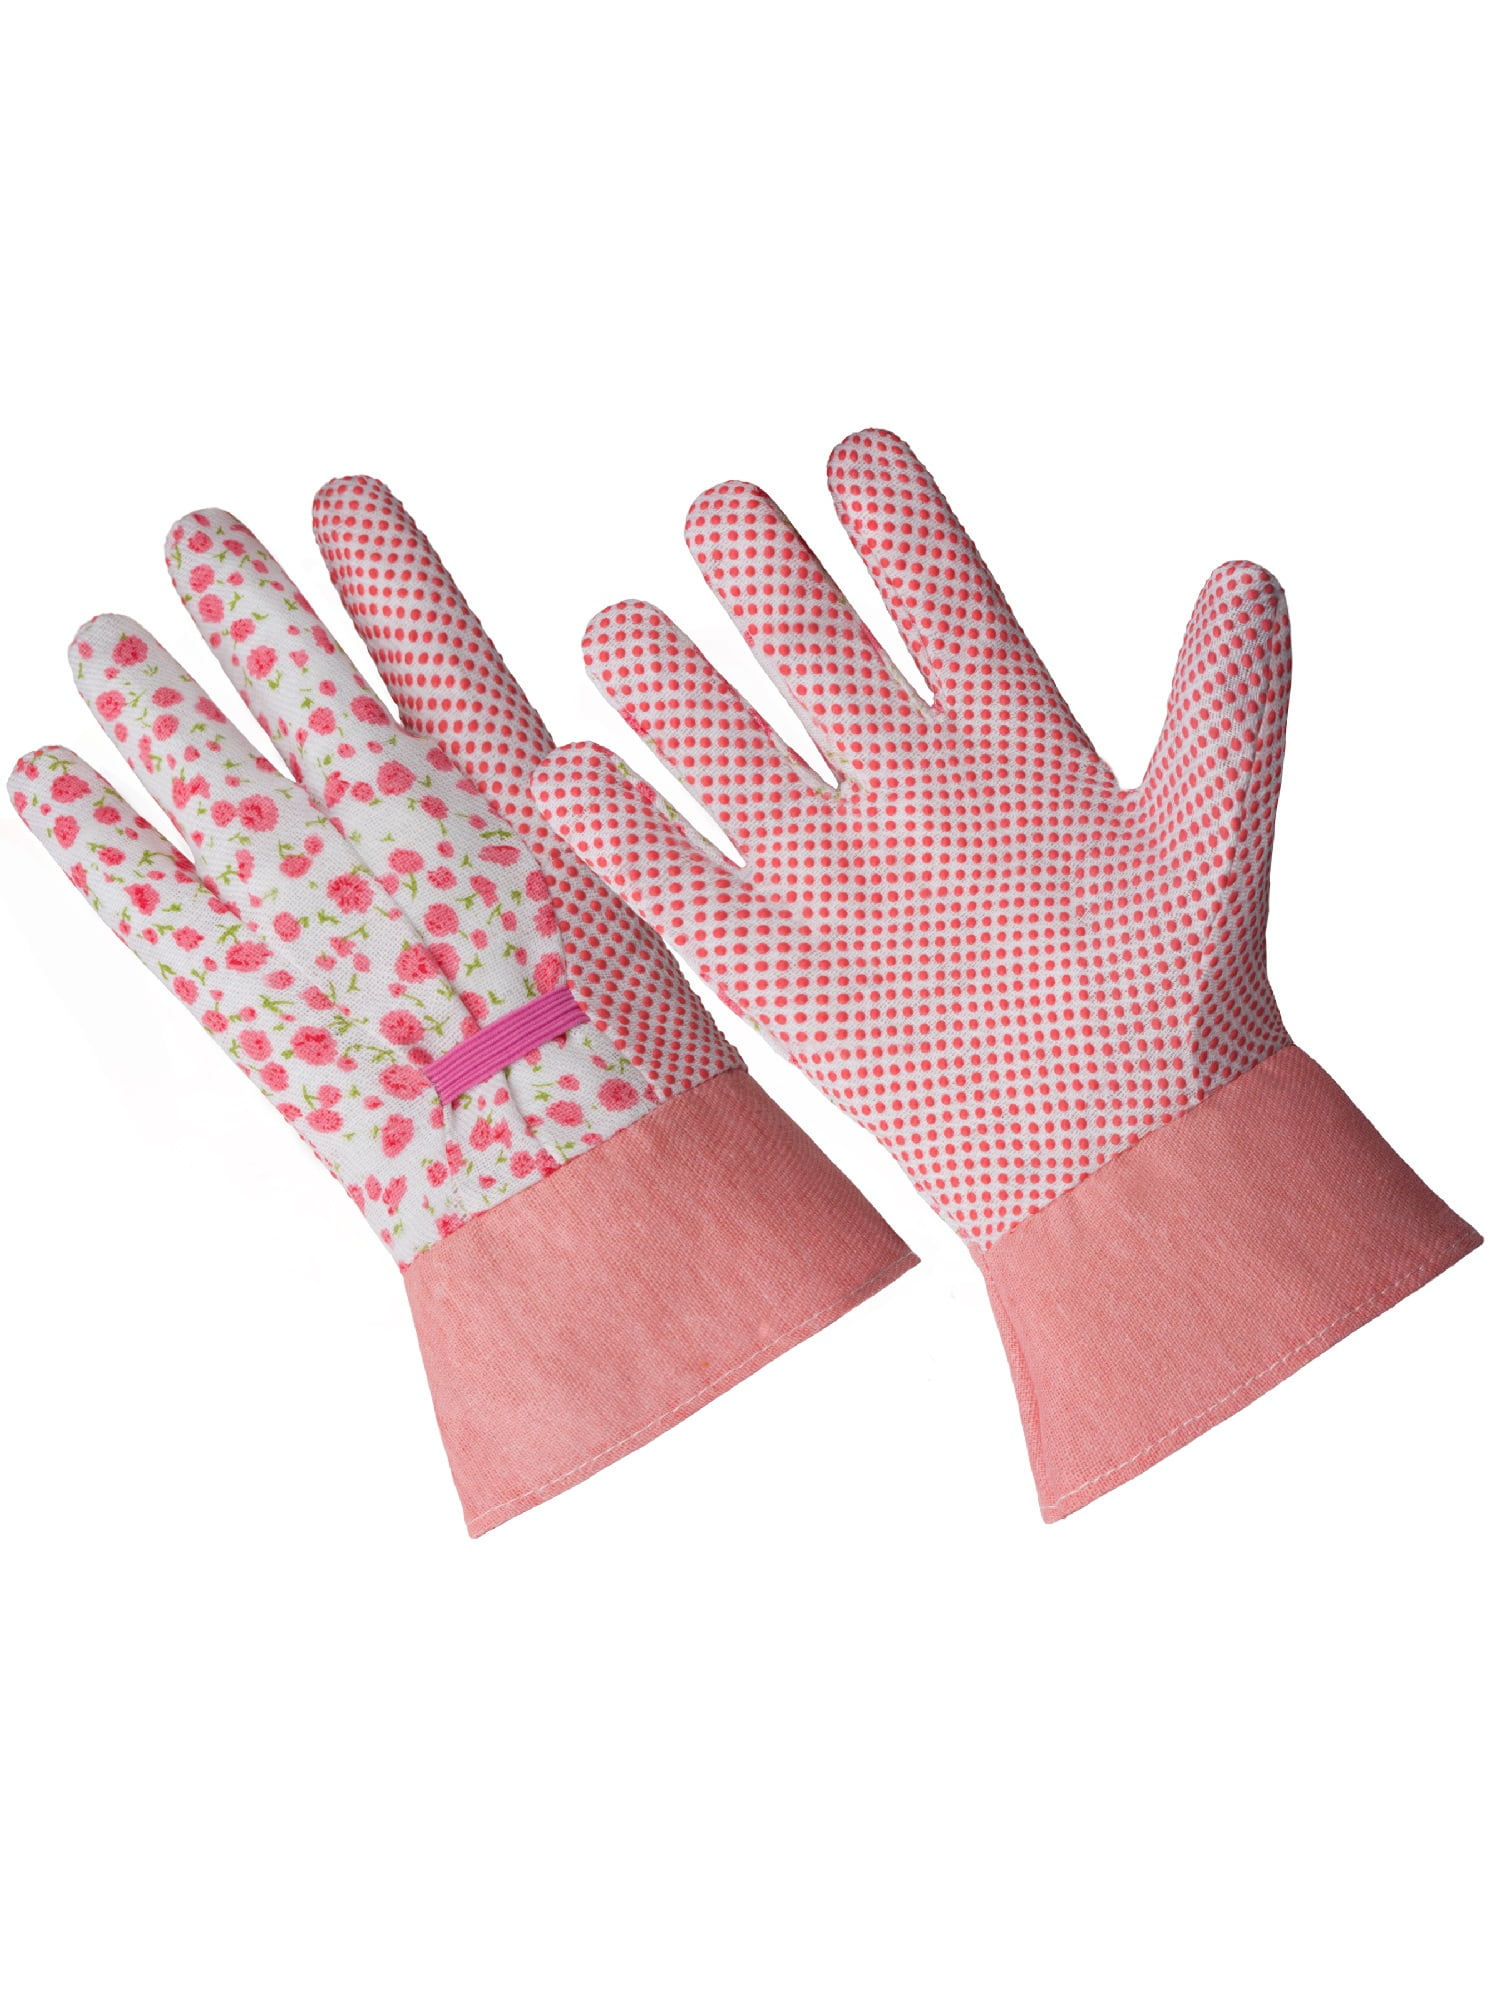 G  F Soft Jersey Garden Gloves, 3 Pairs, Green/Pink/Blue, Women -  Walmart.com